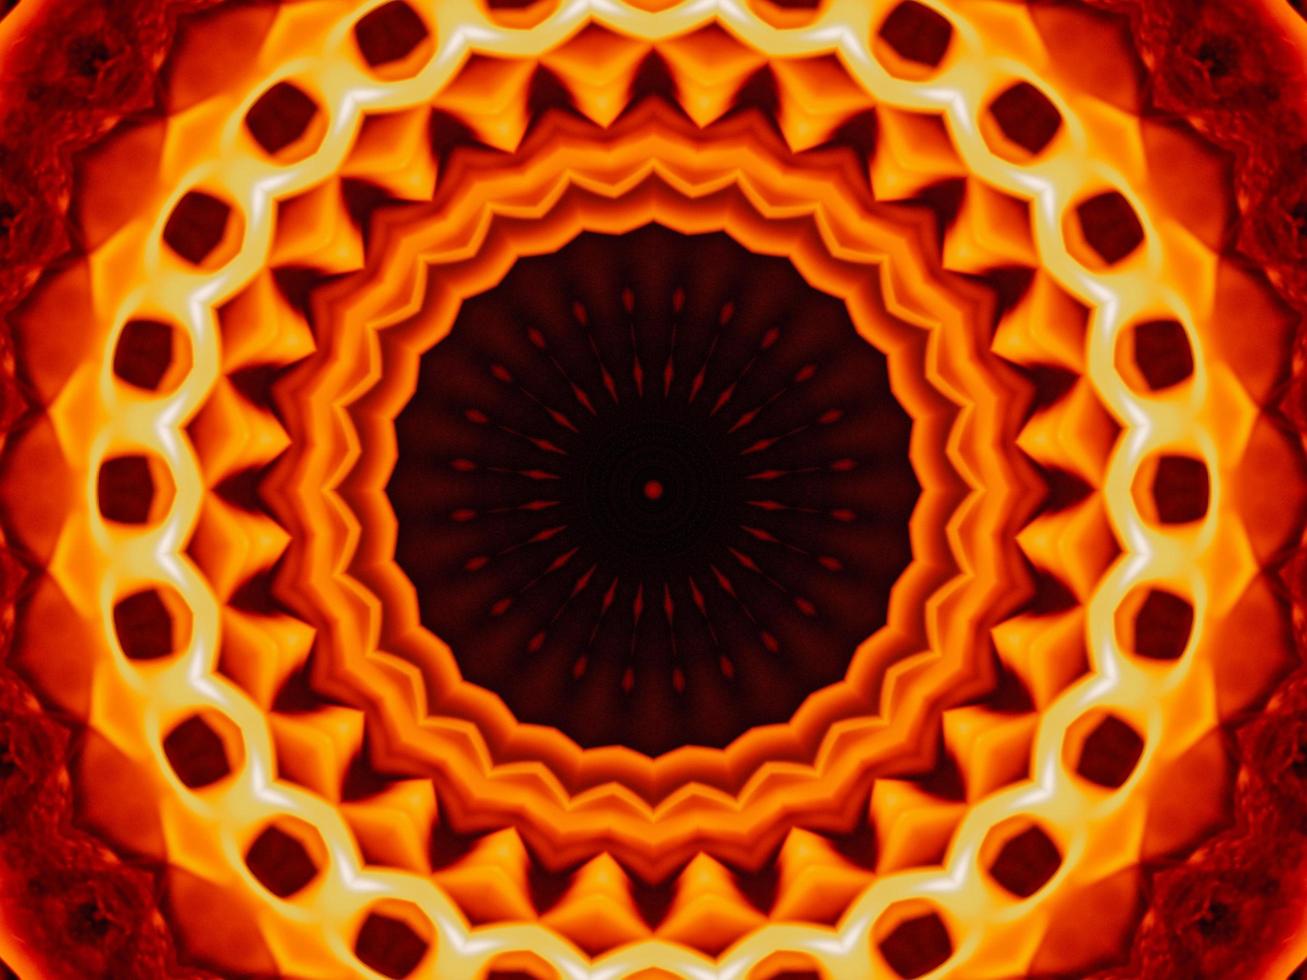 sfondo astratto unico. modello caleidoscopio di fiamme arancioni. foto gratis